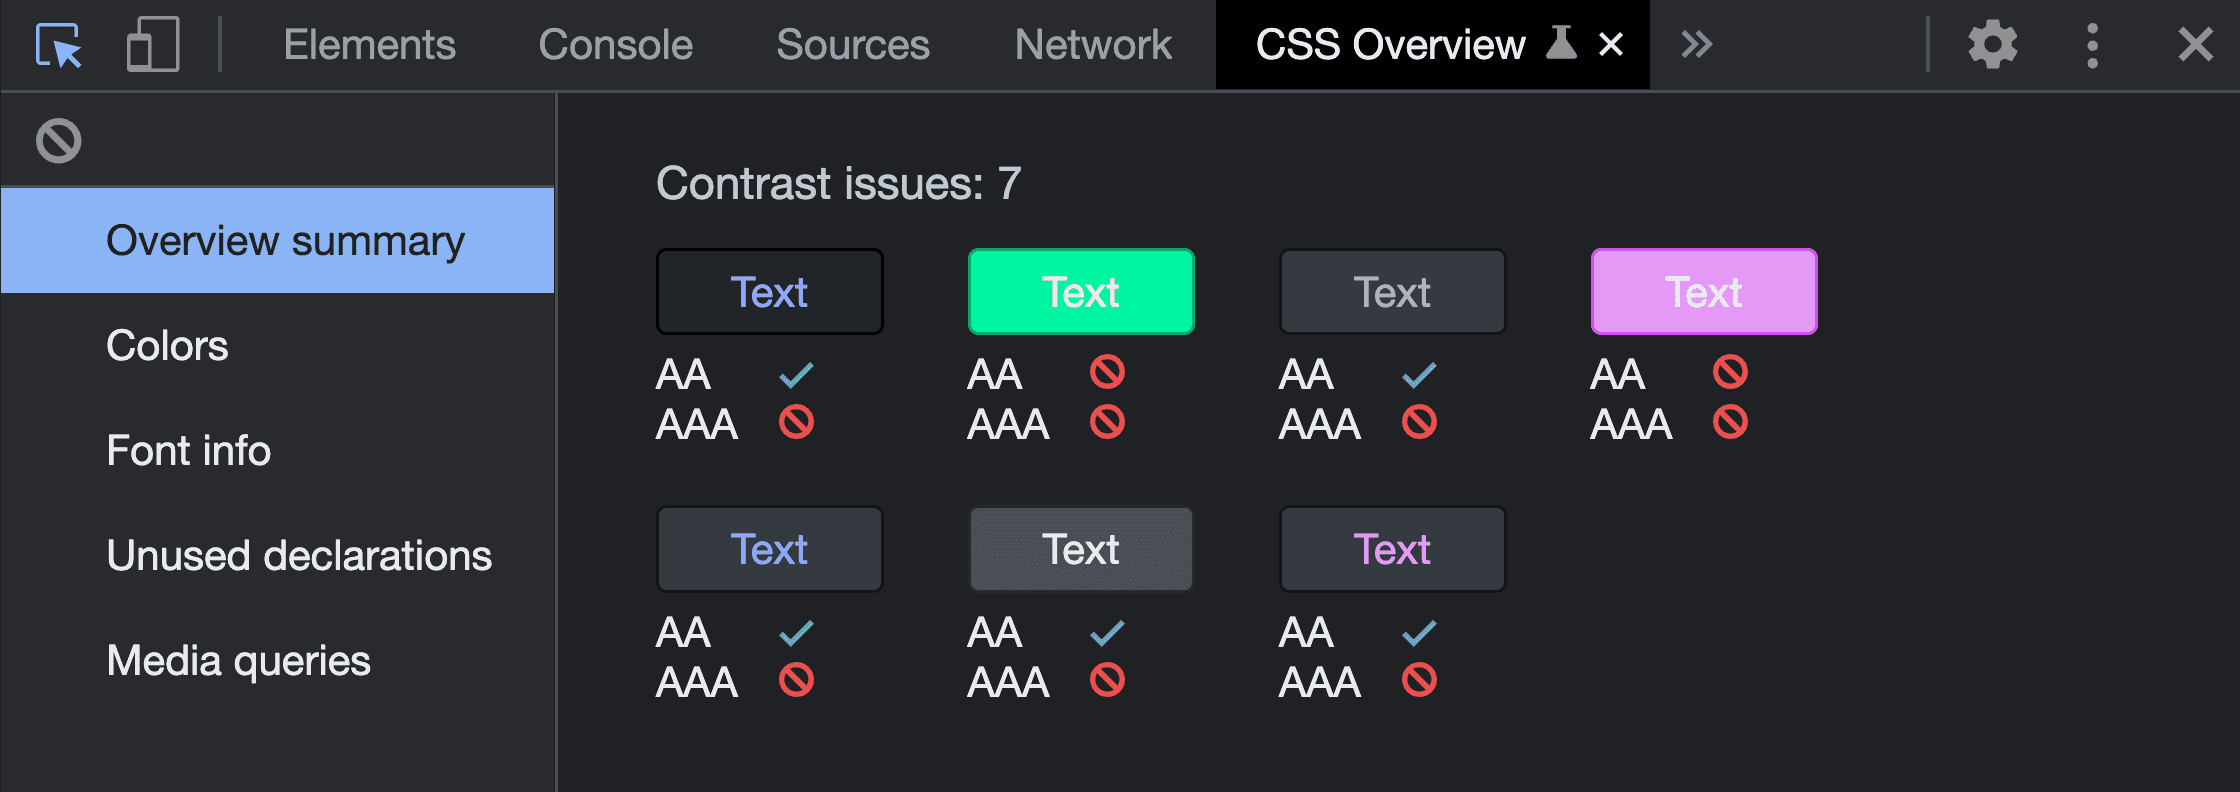 Zrzut ekranu pokazujący podsumowanie Przegląd po uruchomieniu narzędzia do przechwytywania przeglądu CSS. Pokazuje 7 problemów z kontrastem – wykryte pary kolorów i ich niezadowalające wyniki.